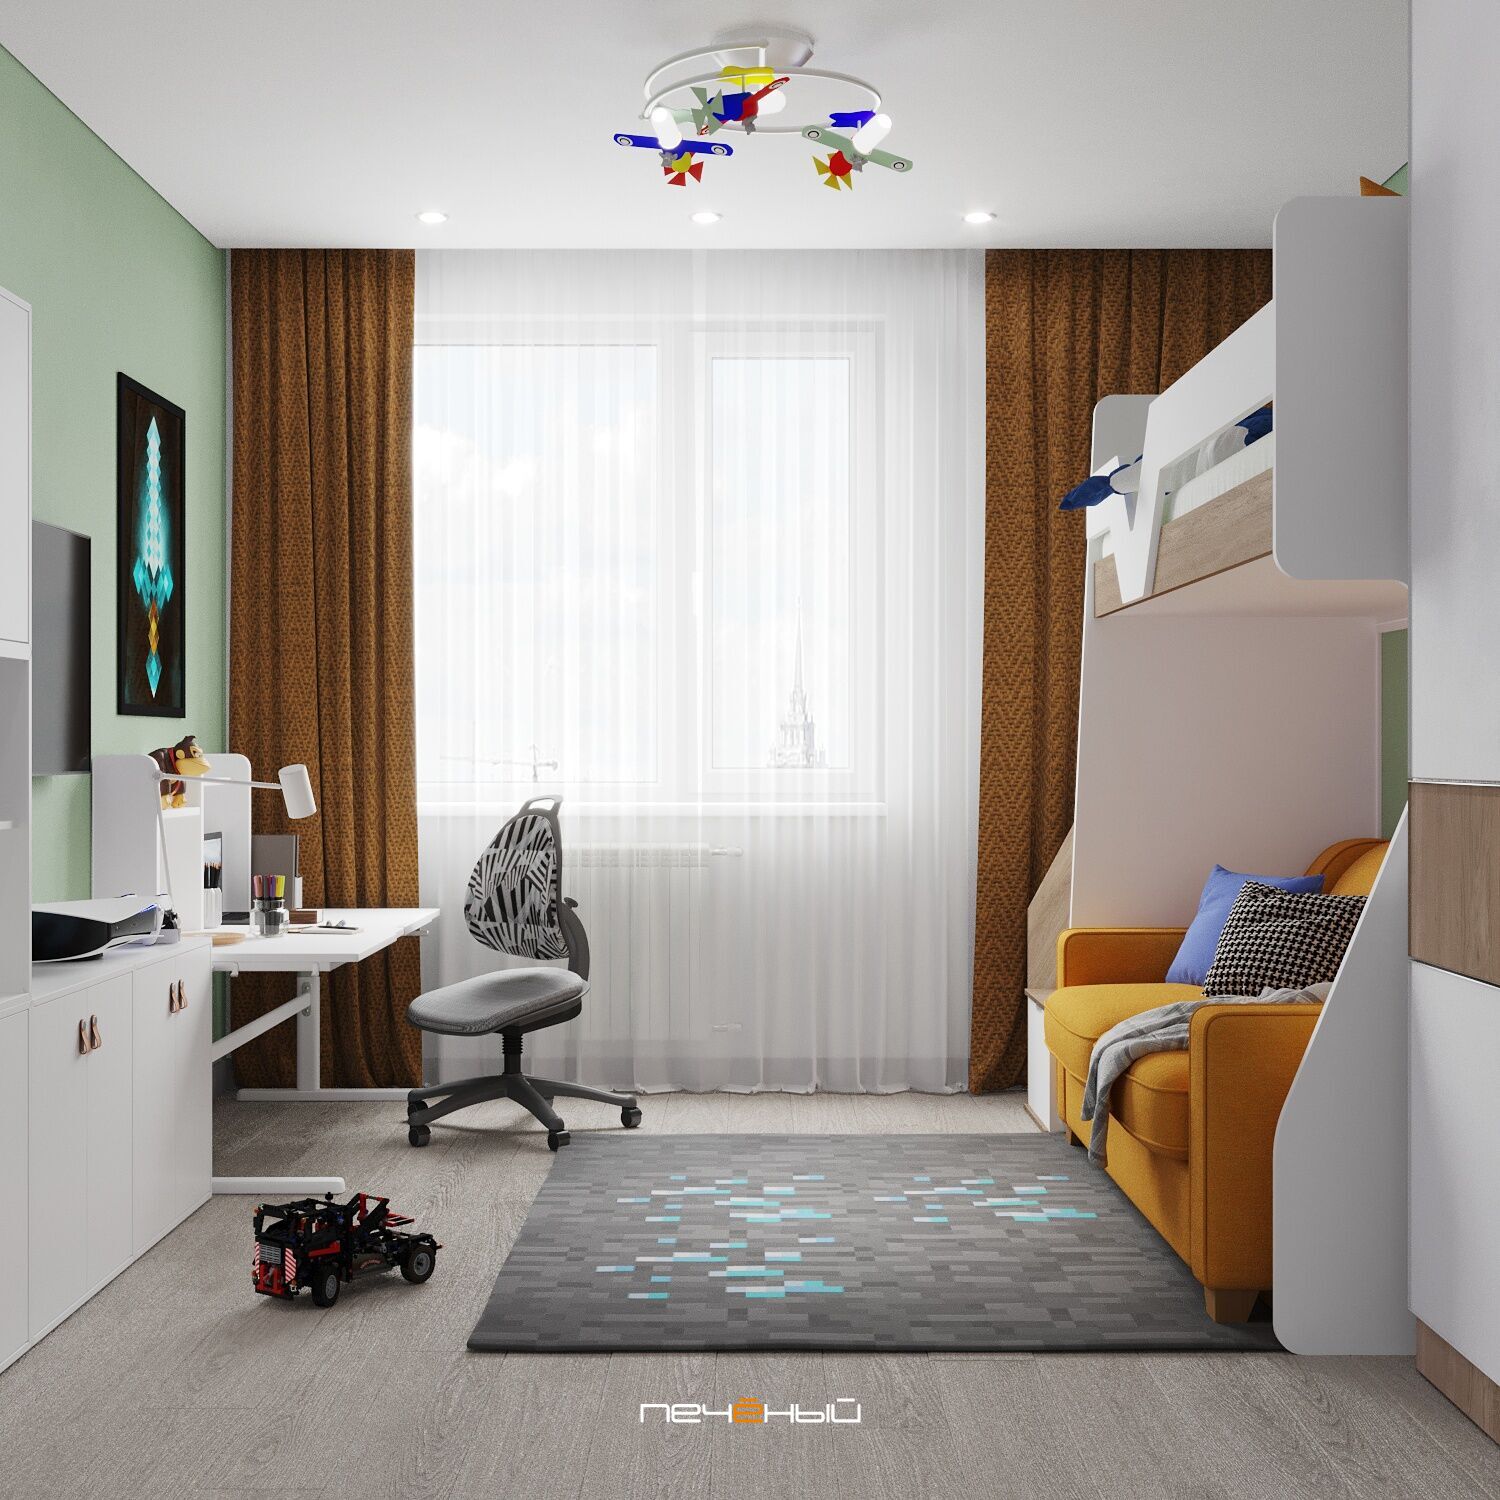 Дизайн детской комнаты 10 кв. м. – лучшие идеи и фото